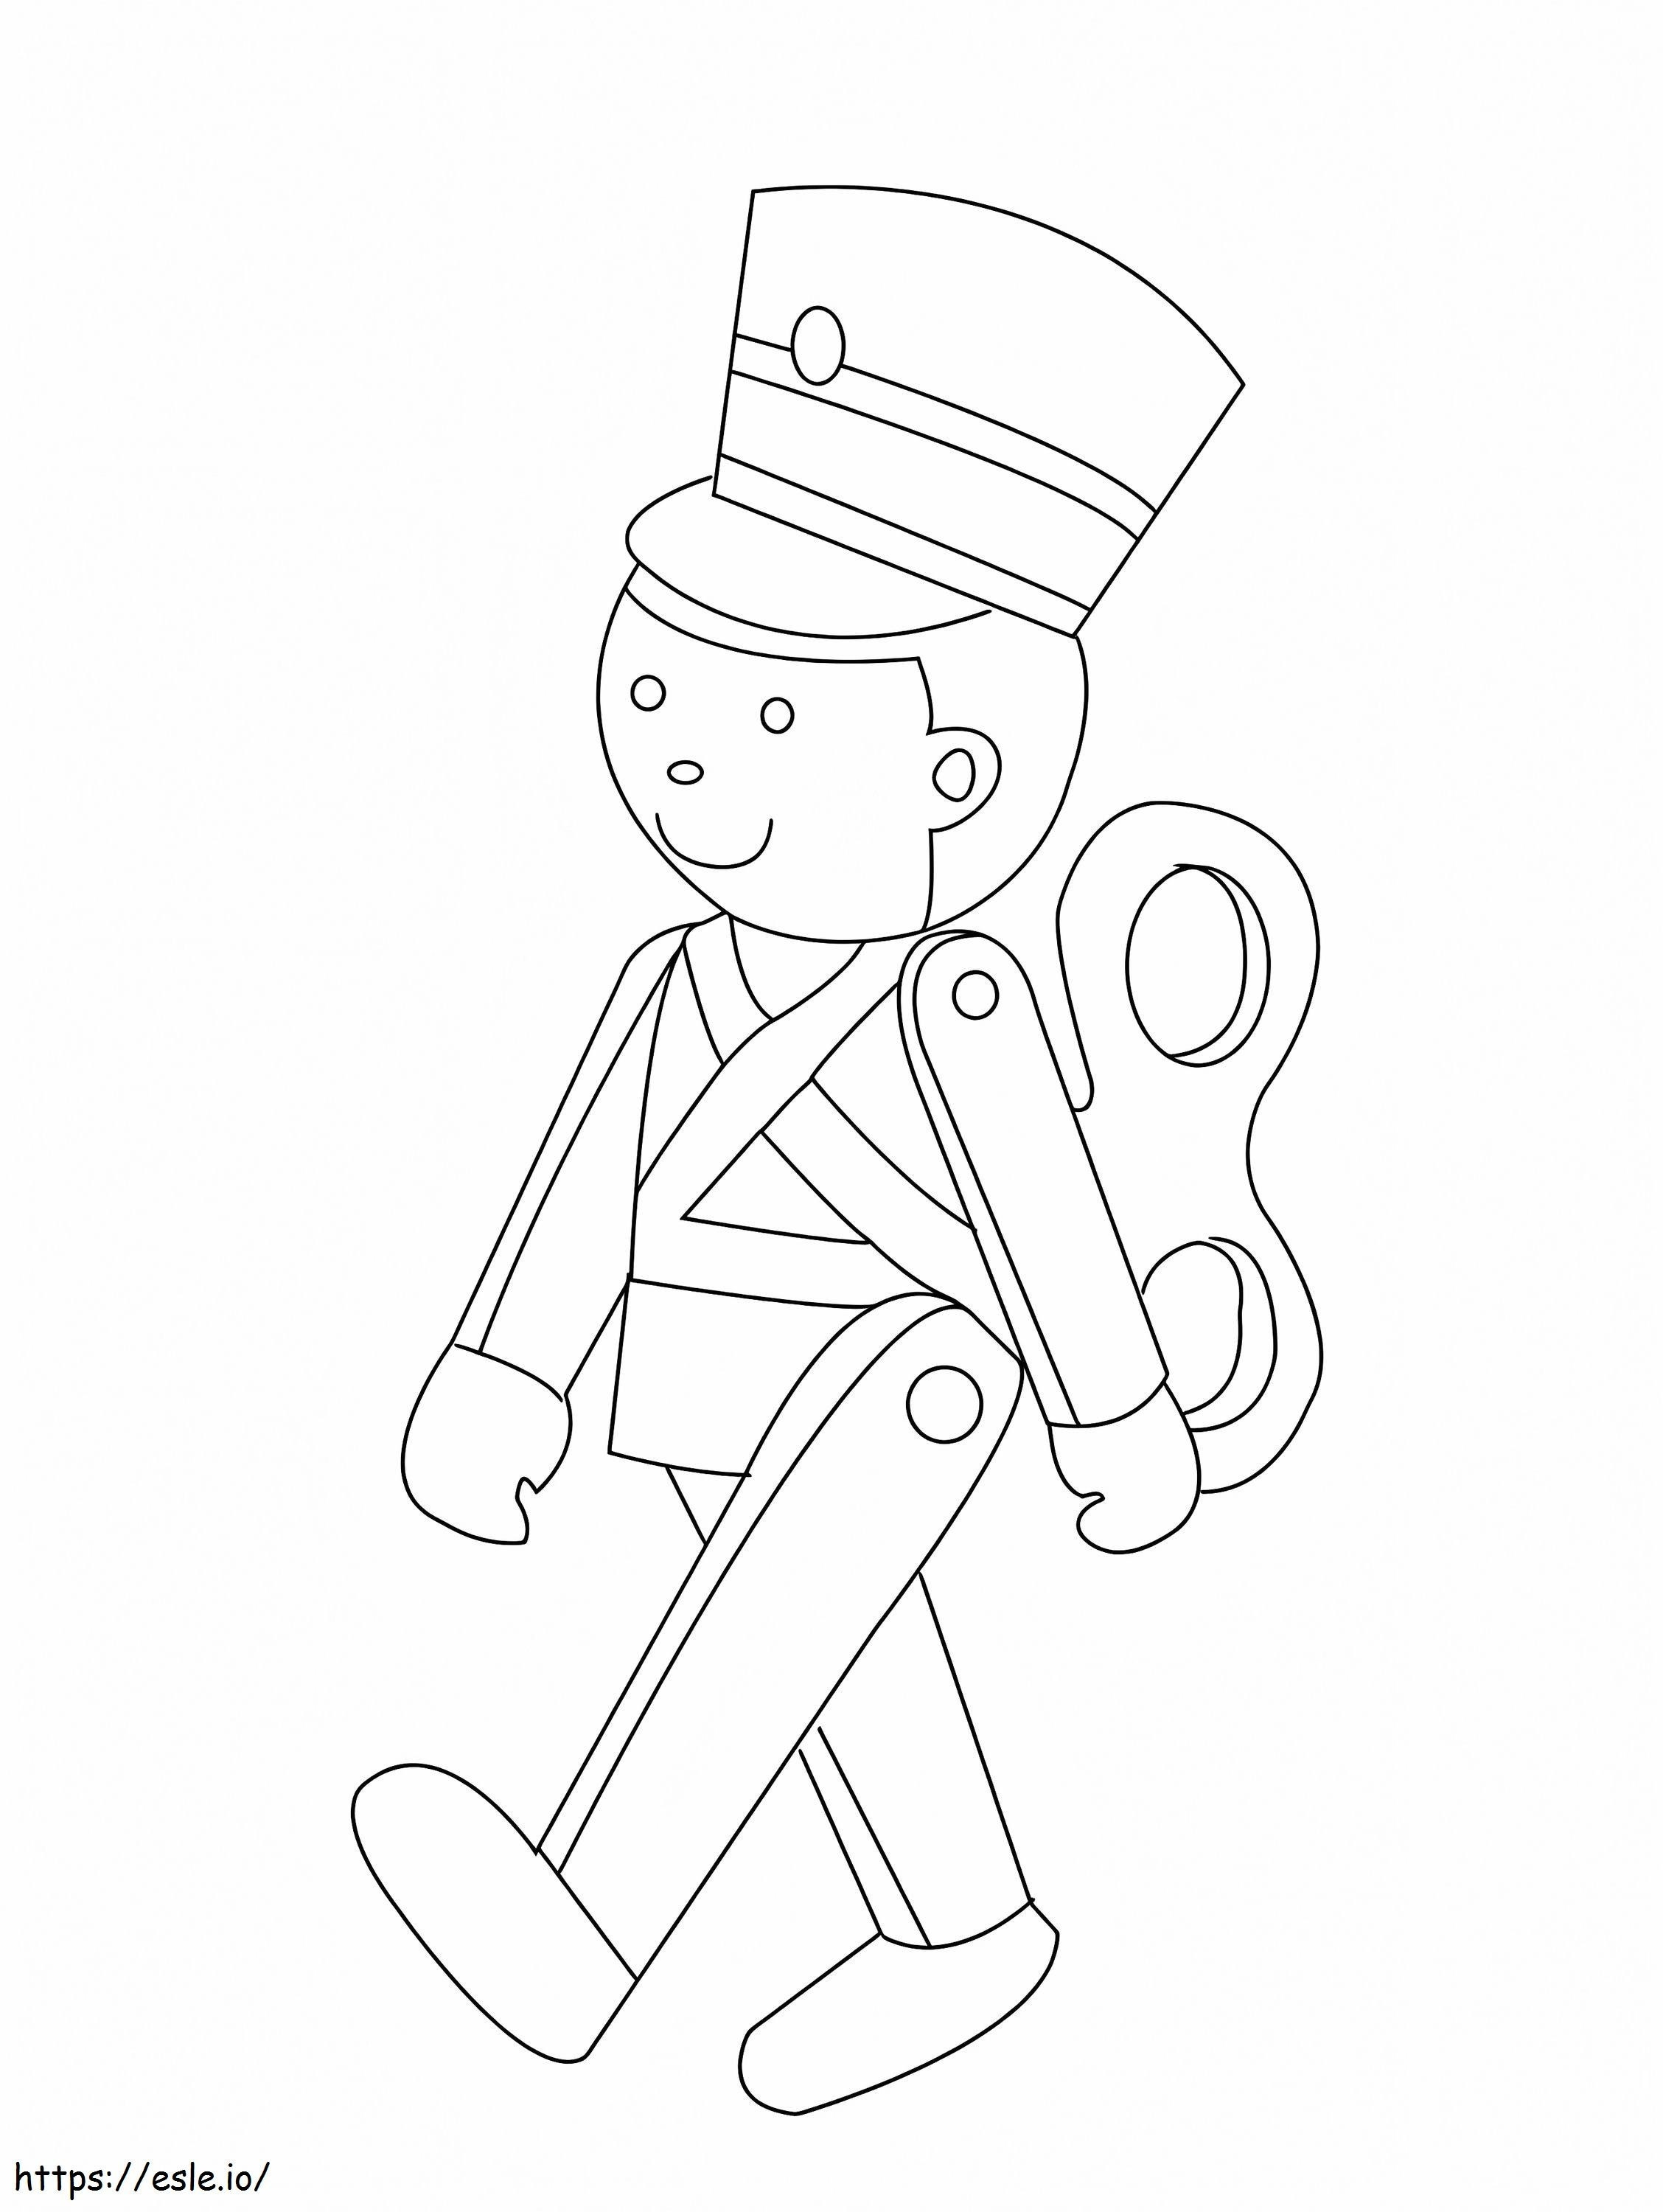 Chodzący żołnierz-zabawka kolorowanka